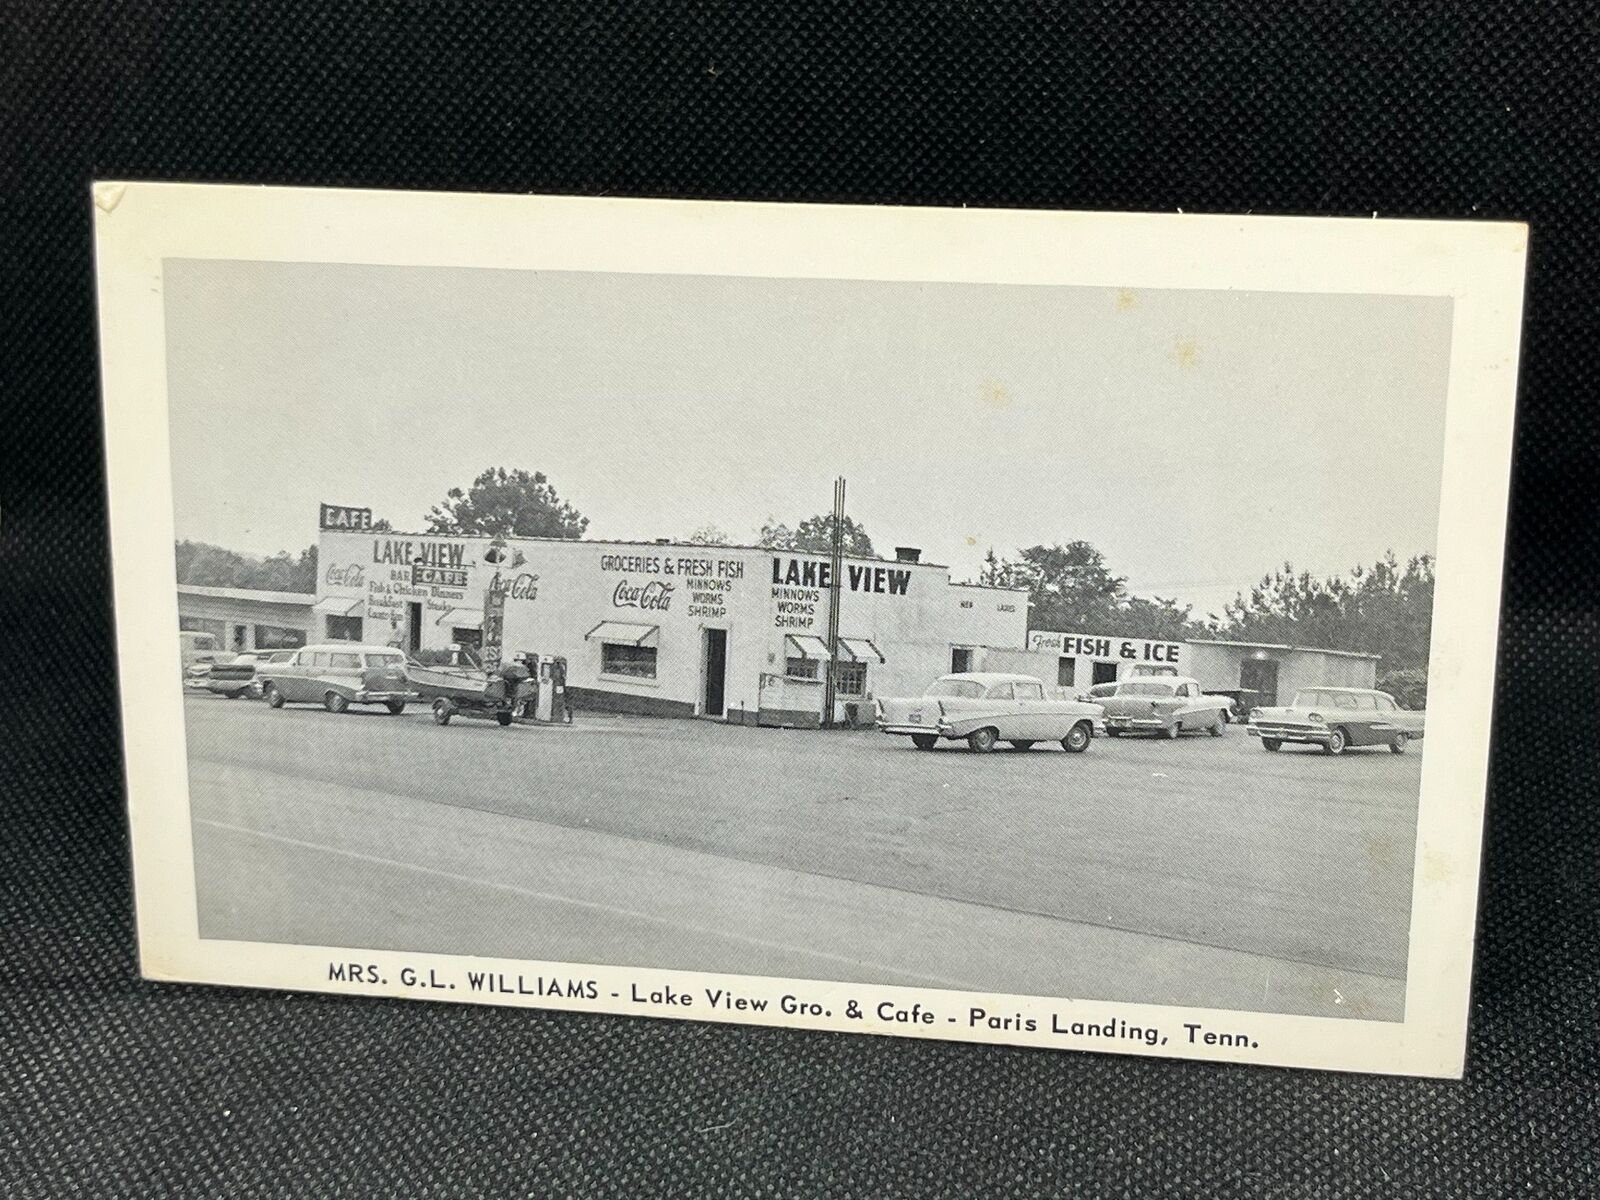 LAKE VIEW GROC. & CAFE - PARIS LANDING, TN 1950'S AUTOS, BOAT,  COCA-COLA SIGN